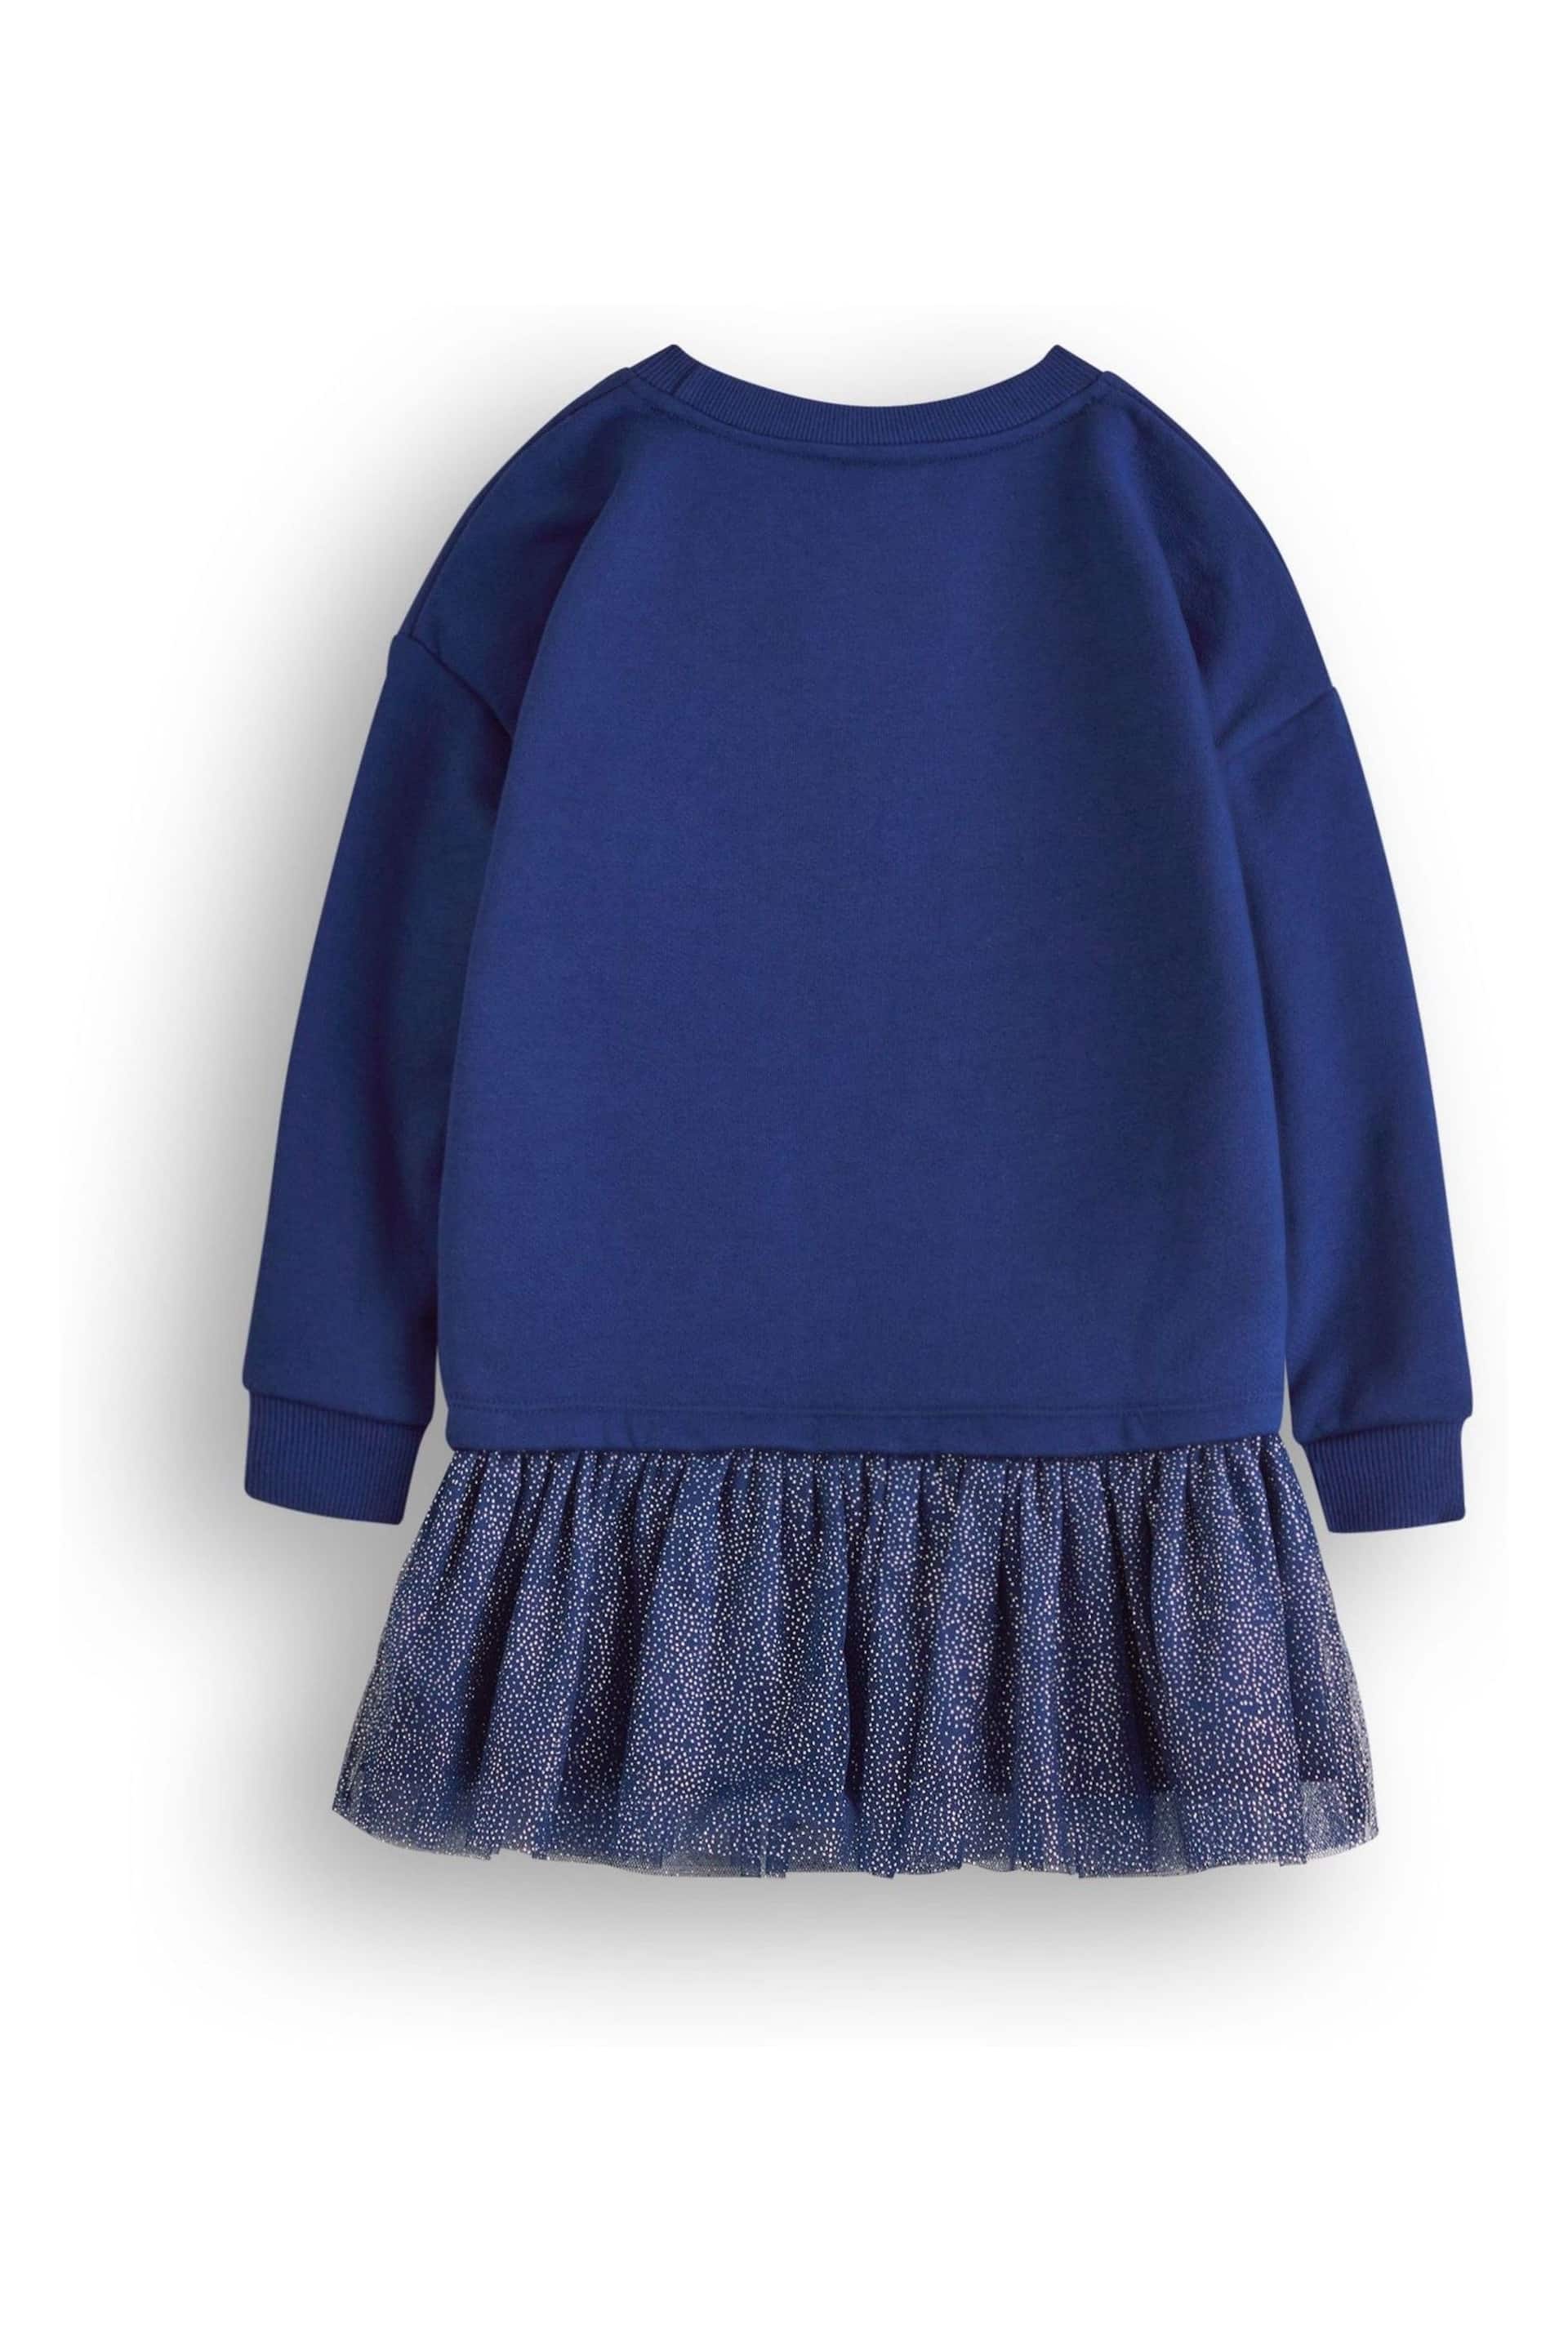 Vanilla Underground Blue Girls Frozen Longline Sweatshirt With Trim - Image 2 of 6